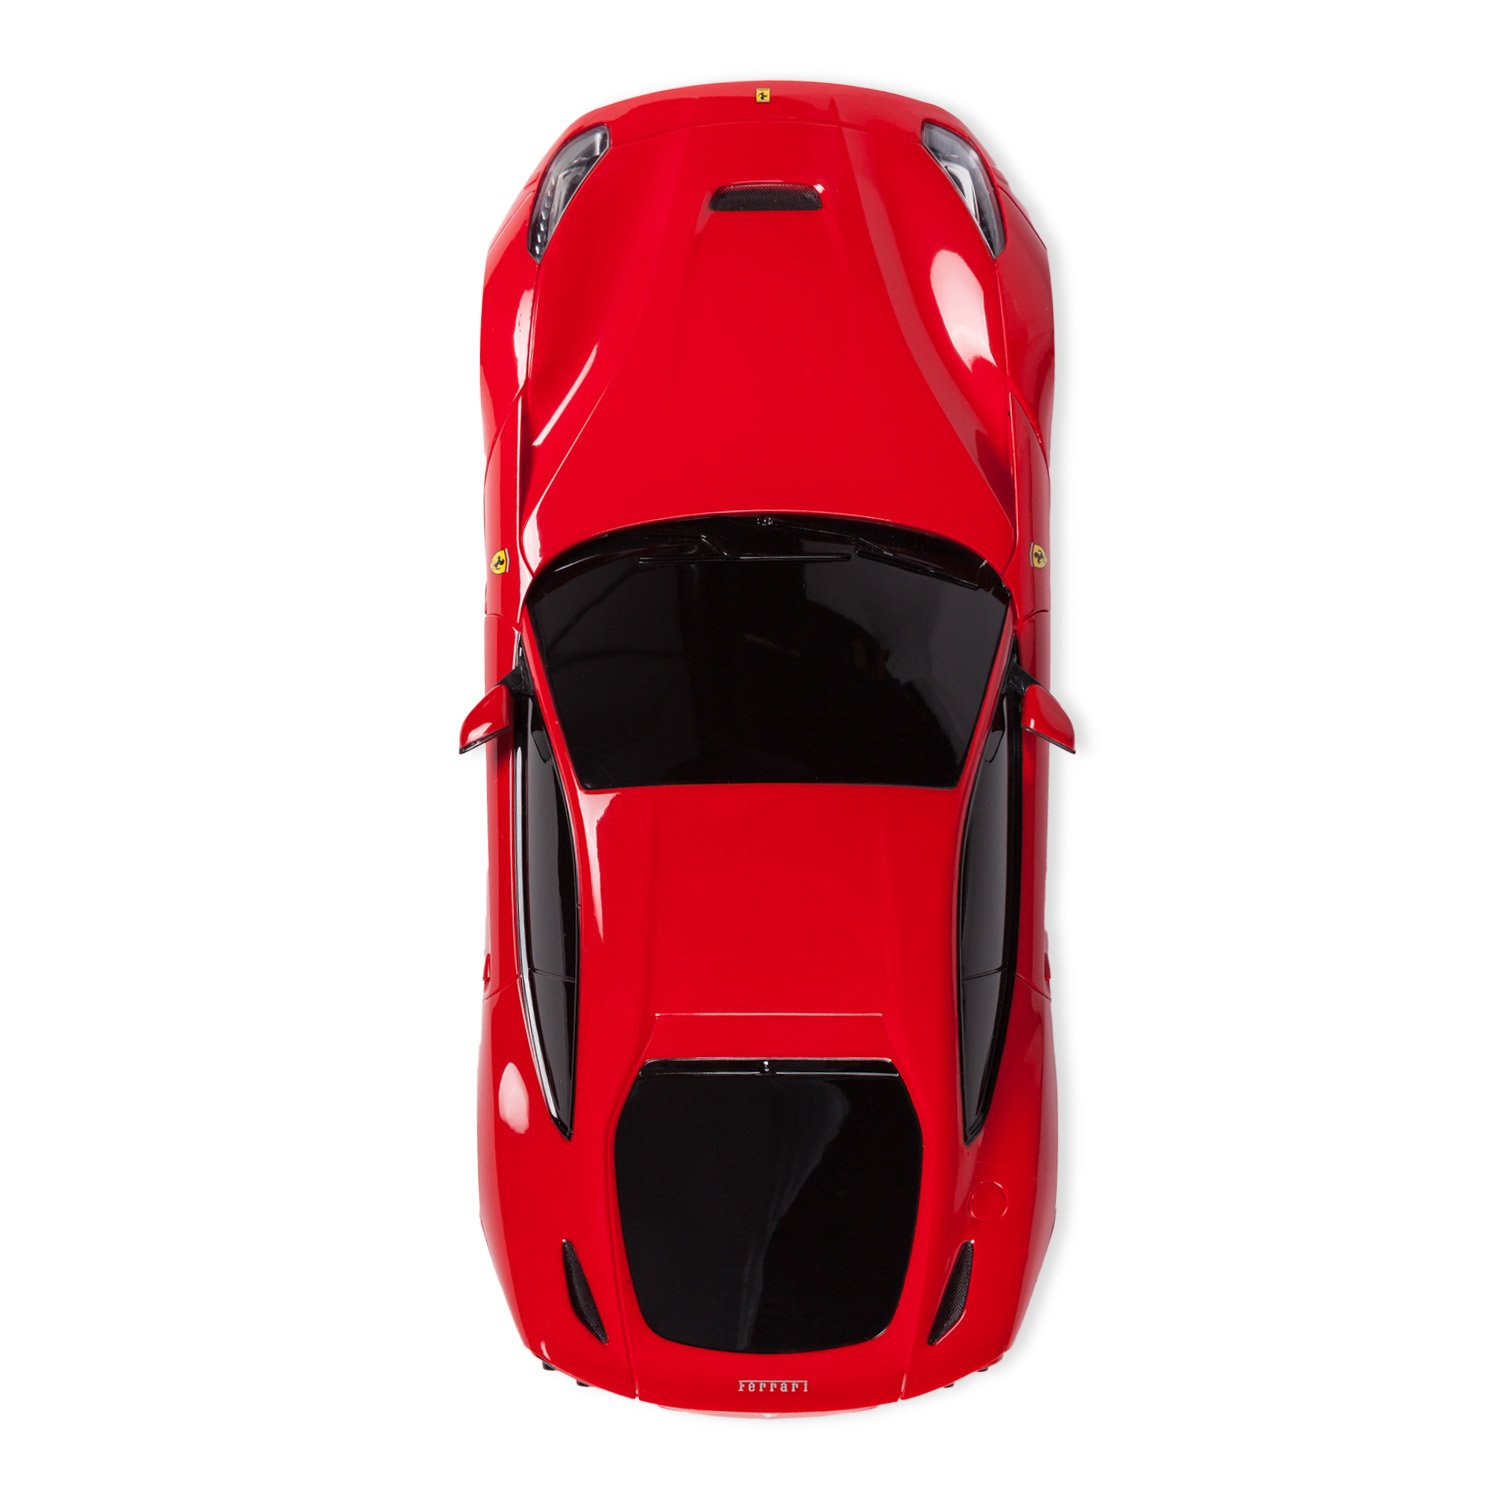 Машинка радиоуправляемая Rastar Ferrari F12 1:18 красная